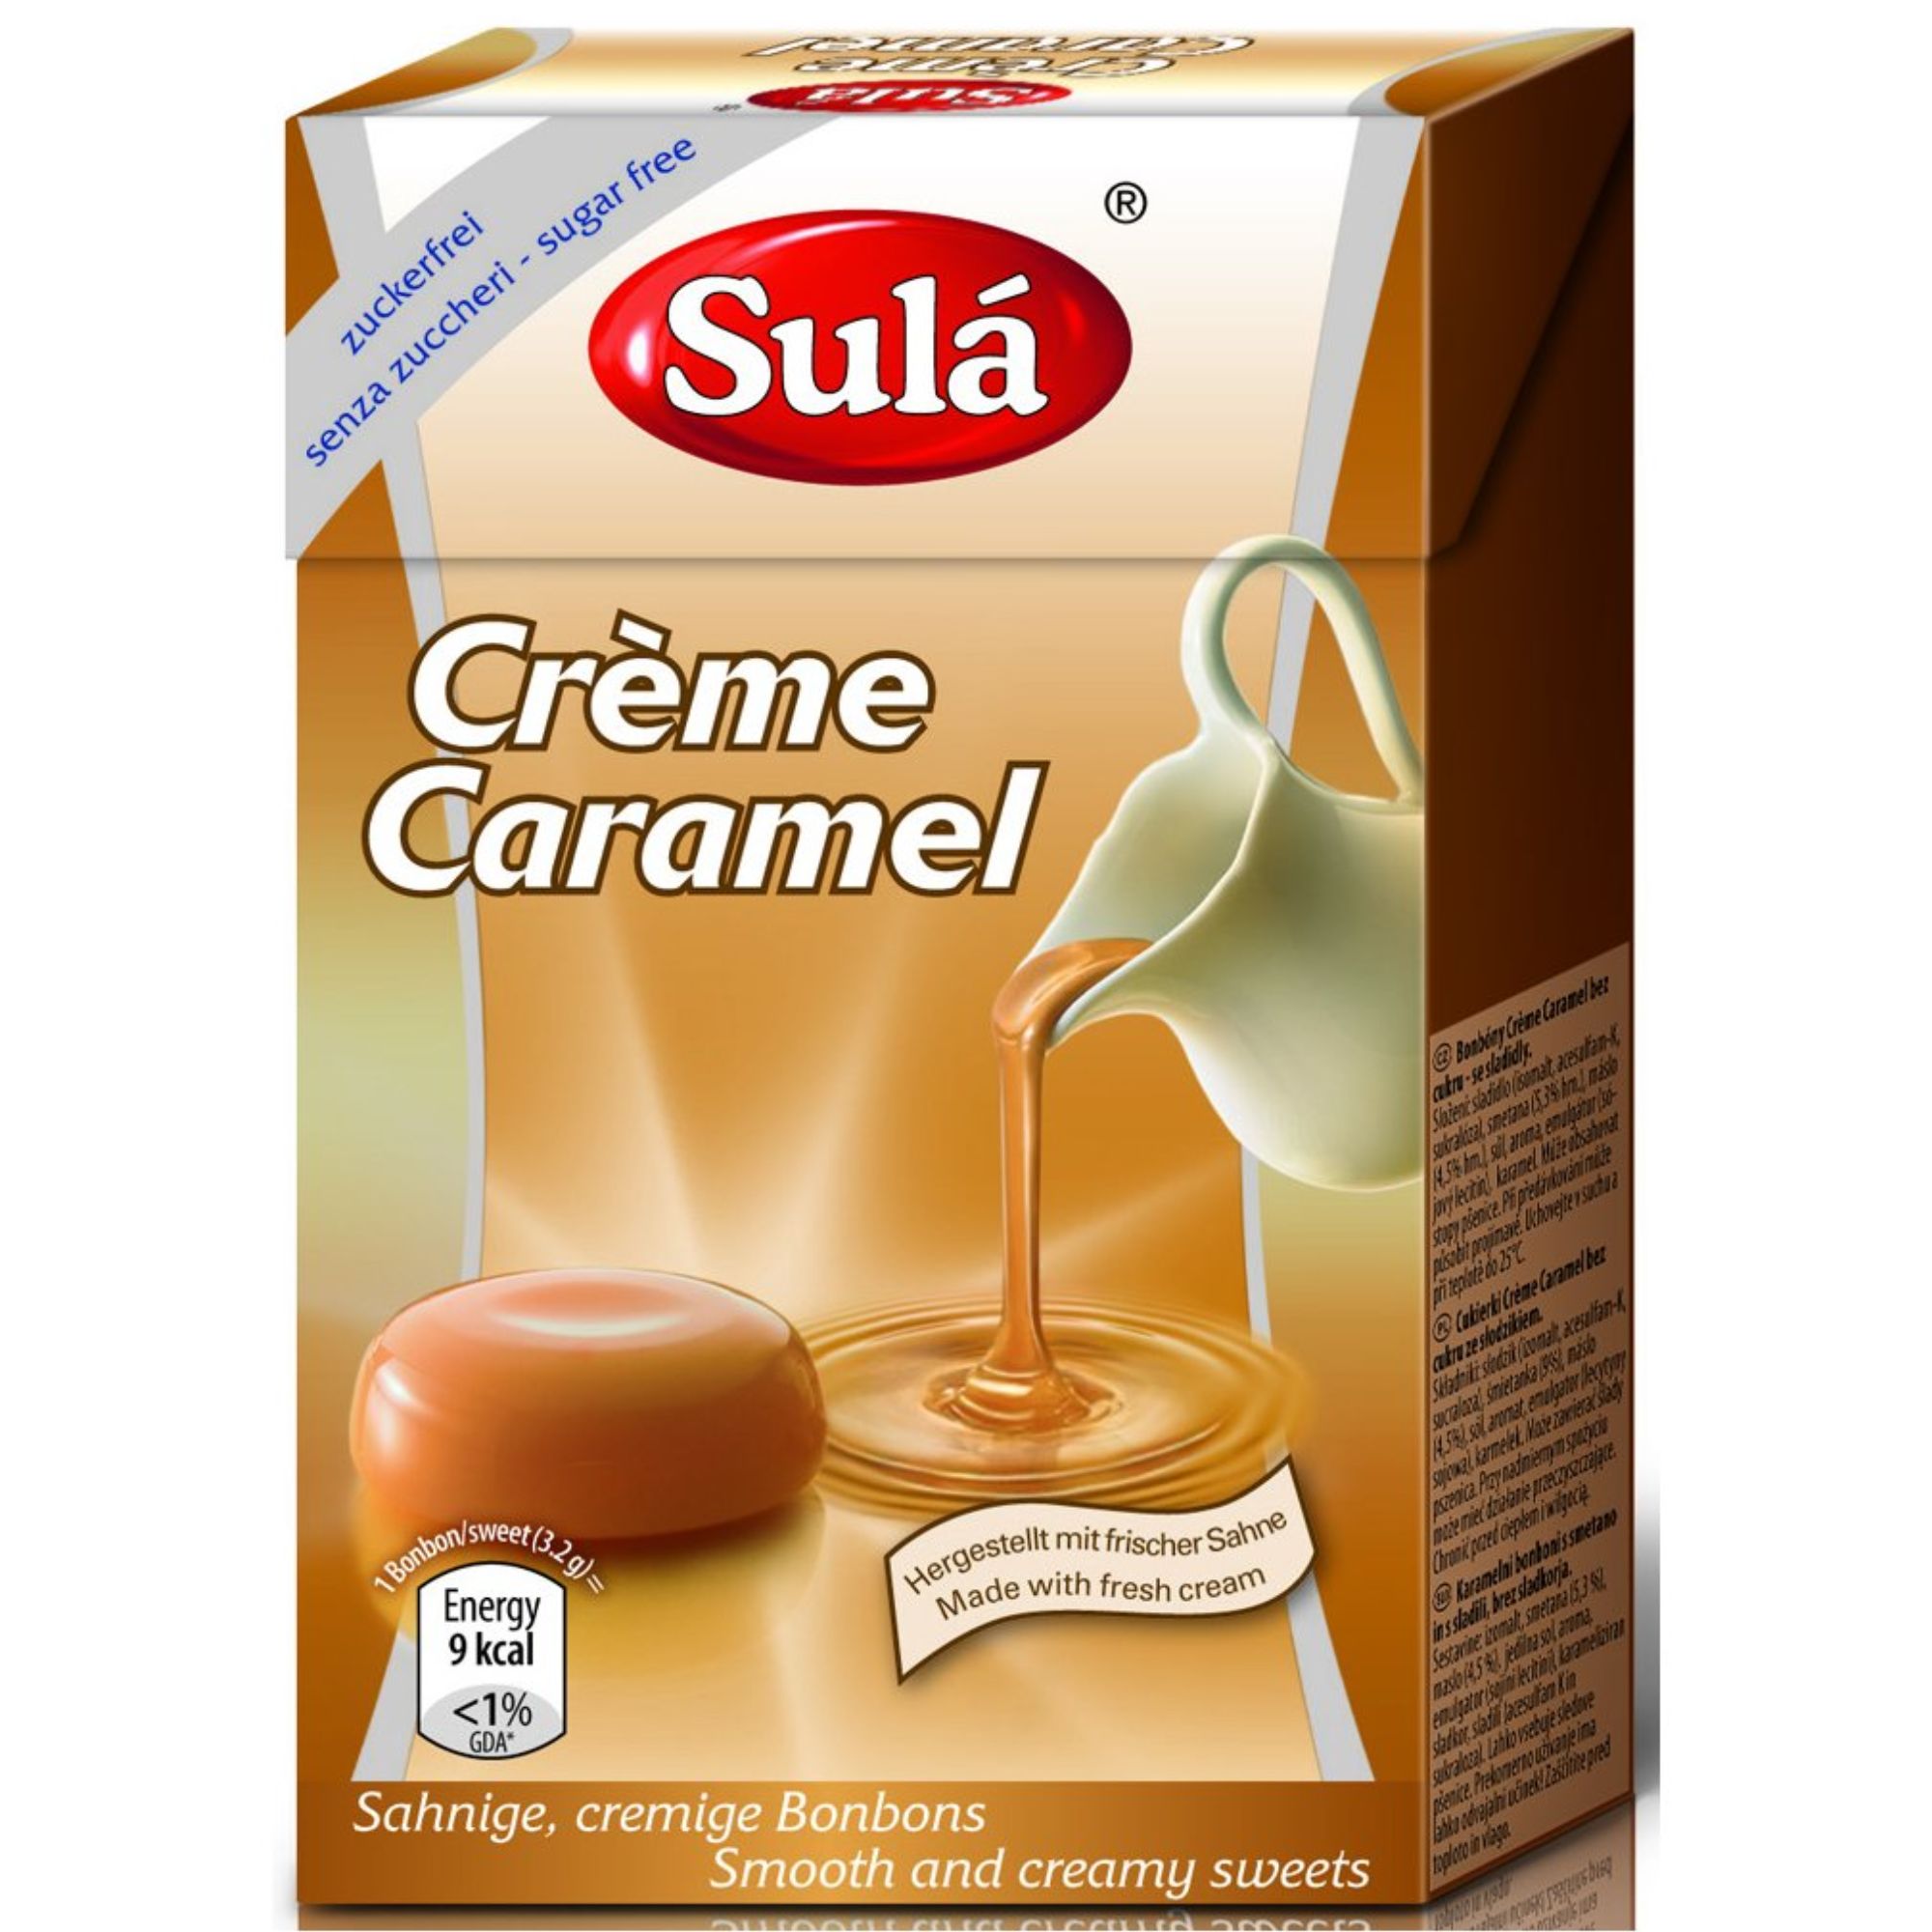 Sula Sulá Creme Caramel - bonbóny s příchutí Caramel bez cukru 44g